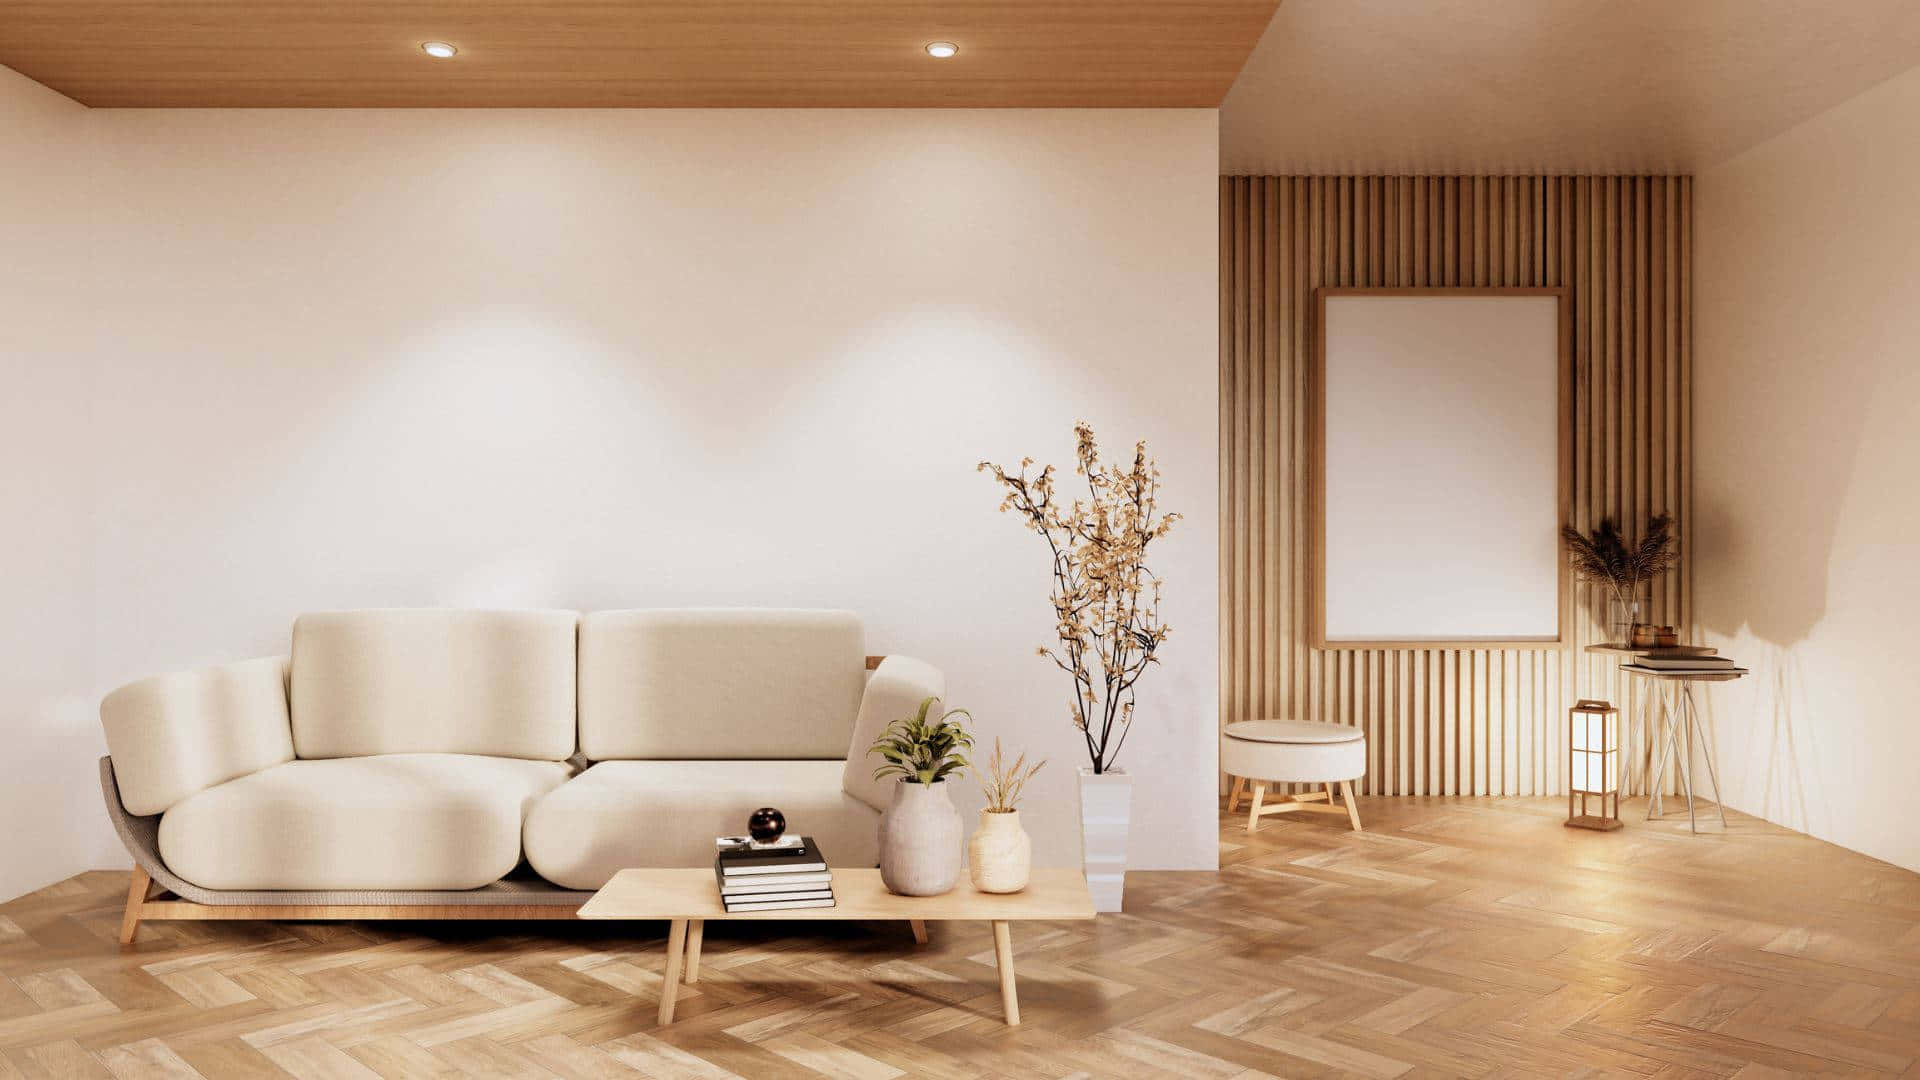 Etopholdsrum Med En Hvid Sofa Og Trægulve